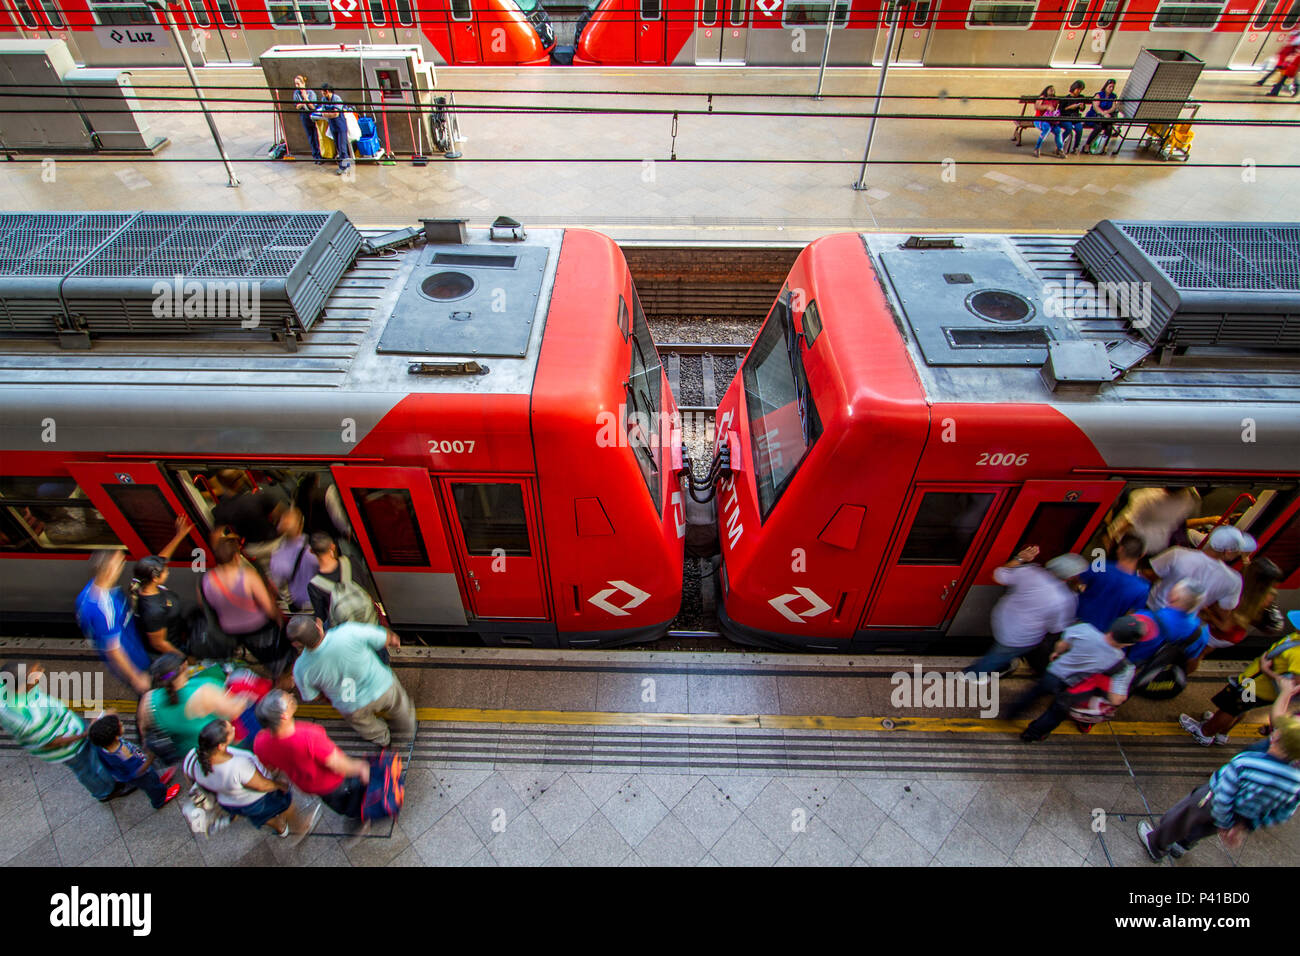 luz, Passageiros aguardam trem na Estação da Luz em São Pau…